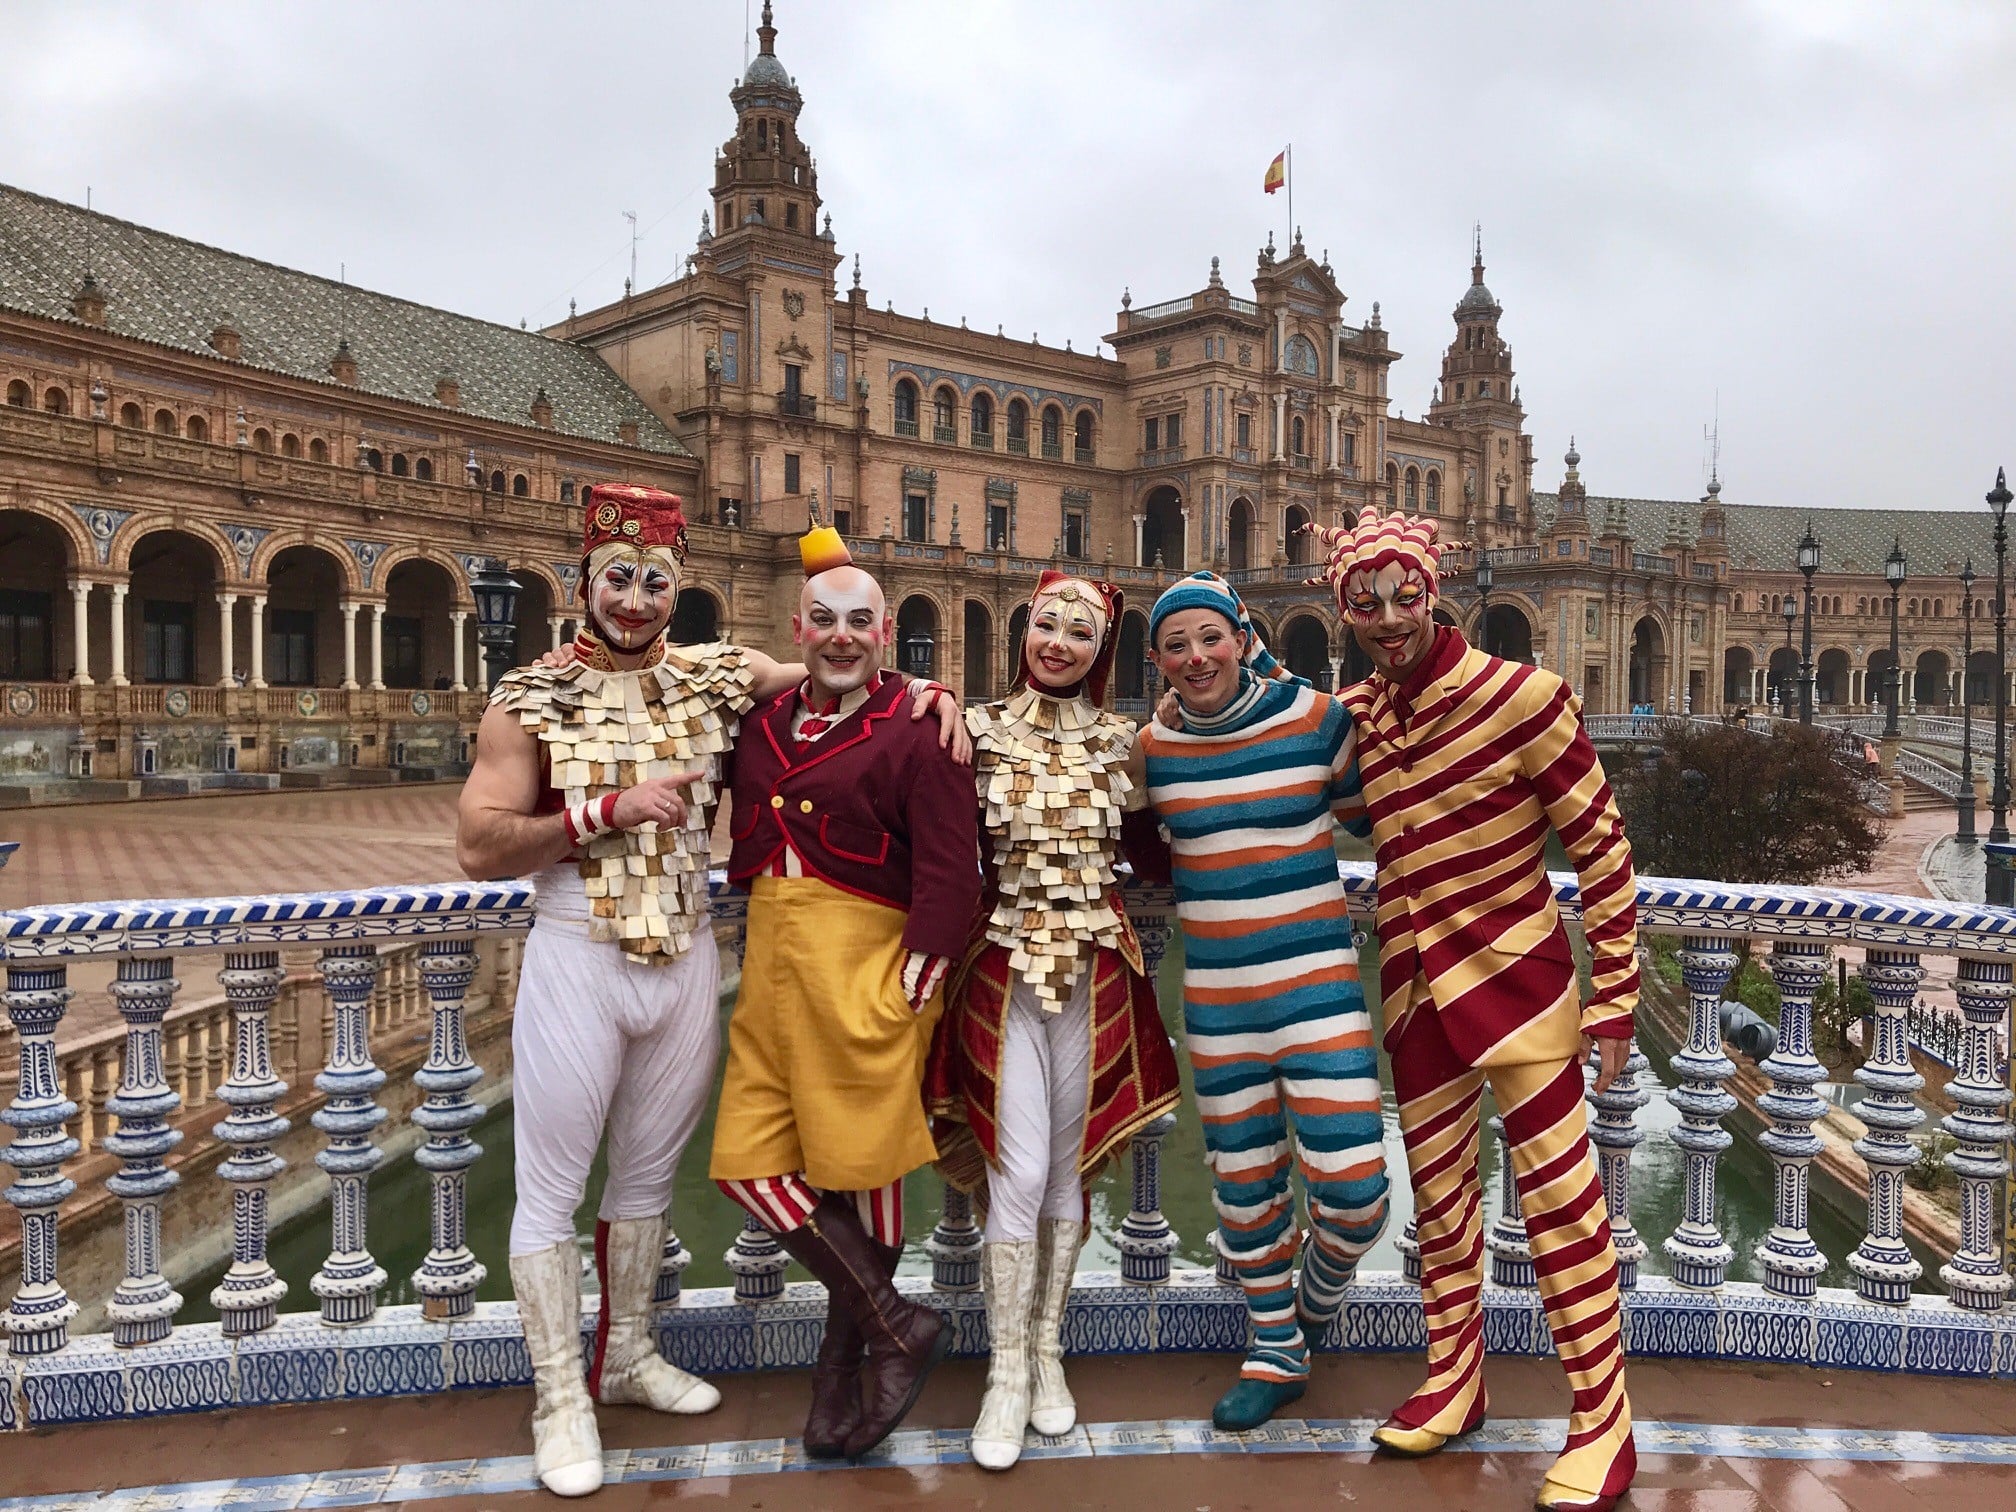 Diez Alboroto reporte Kooza', la magia del Cirque du Soleil regresa a la vida cultural de Sevilla